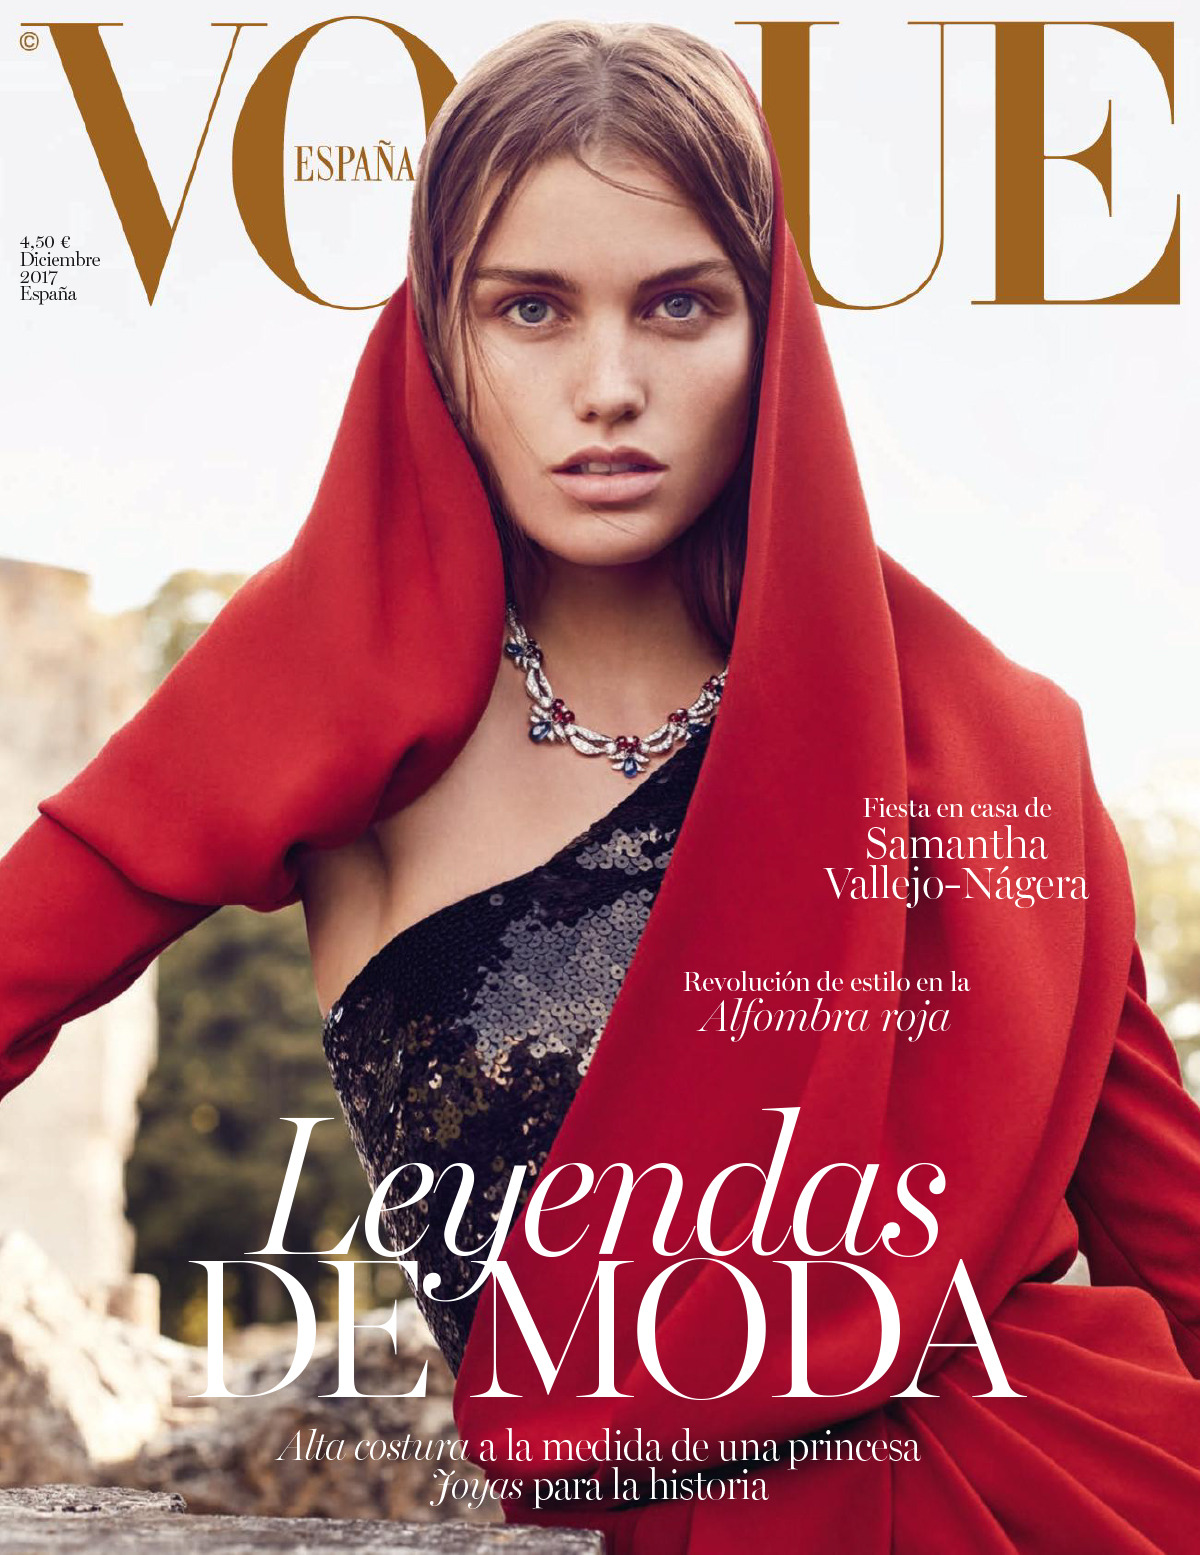 Vogue Spain December 2017 Magazine